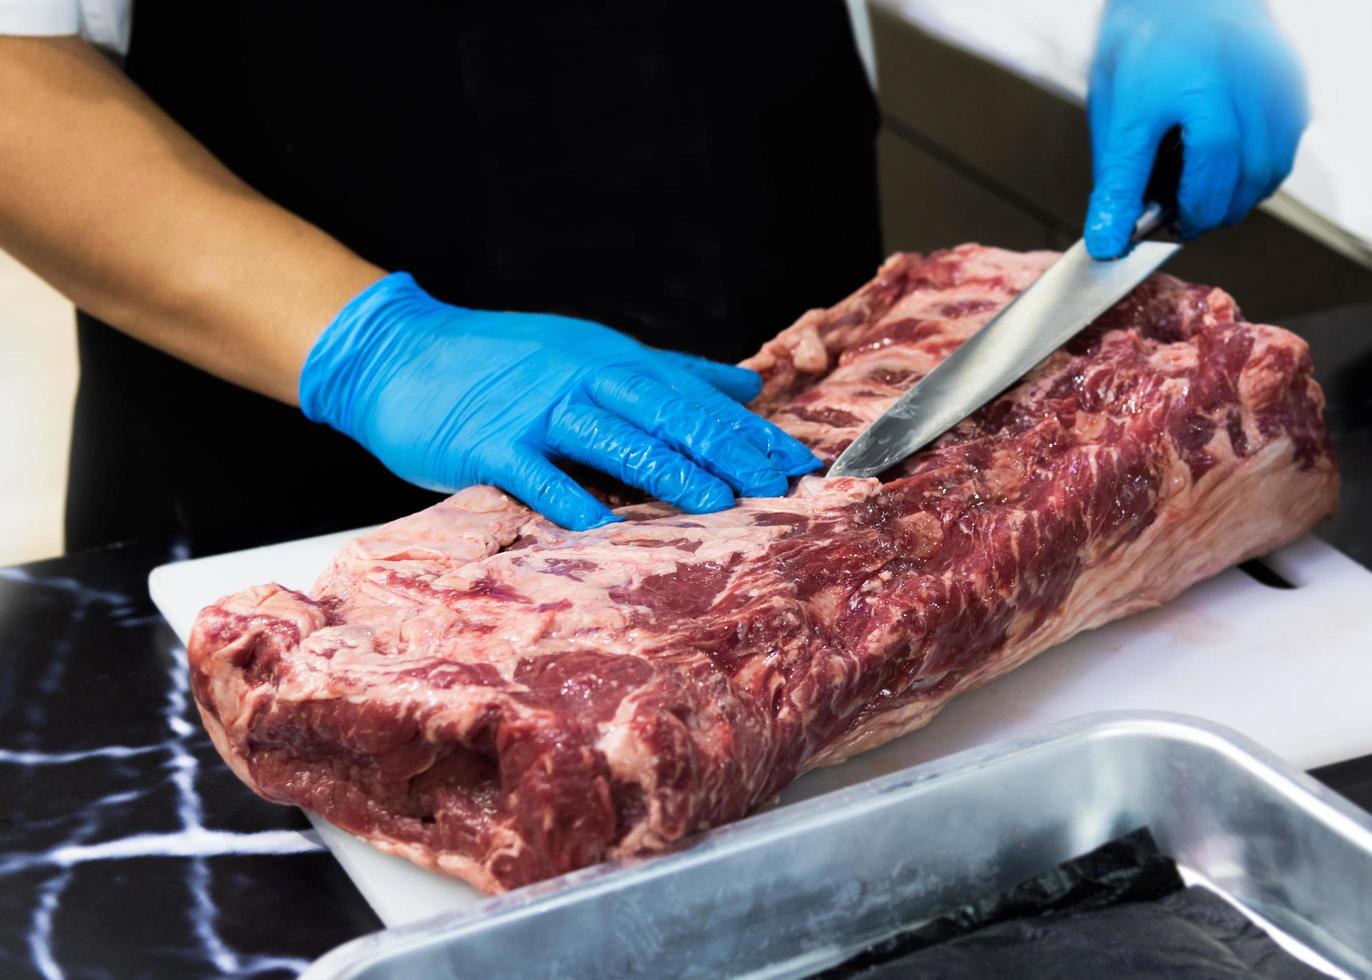 le chef coupe la viande crue avec un couteau sur une planche, le cuisinier coupe la viande crue photo